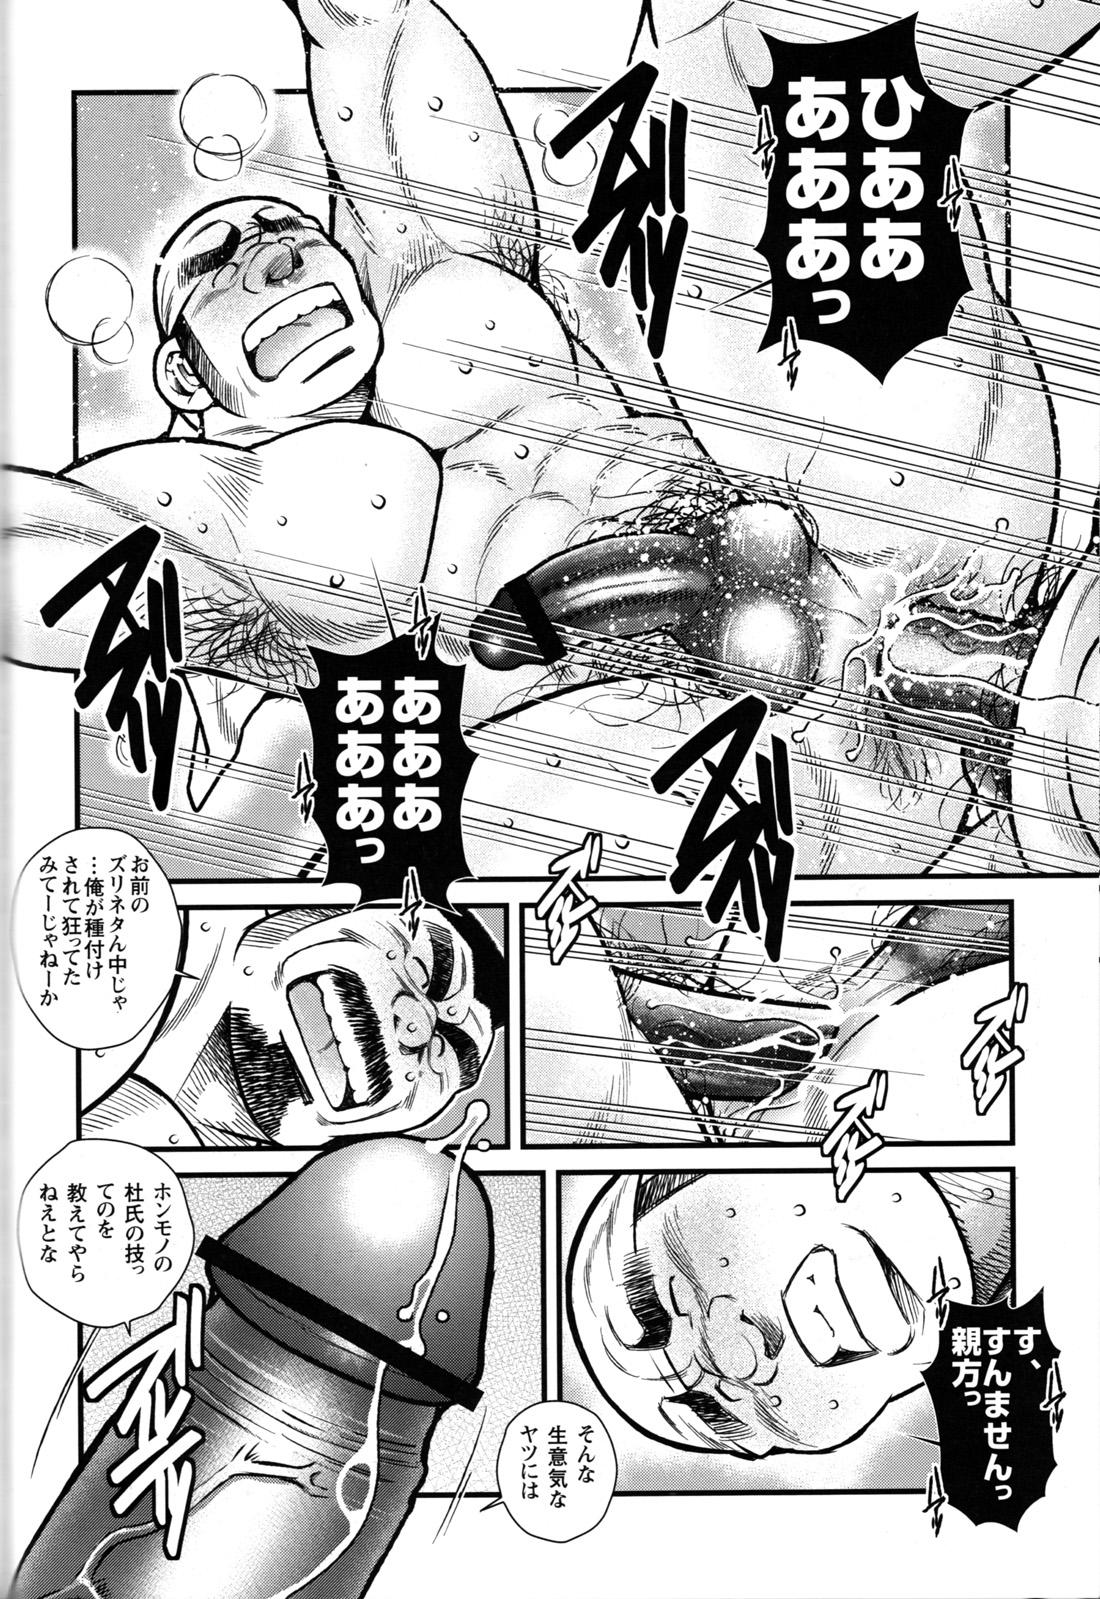 Comic G-men Gaho No.09 Gacchibi Zeme 63